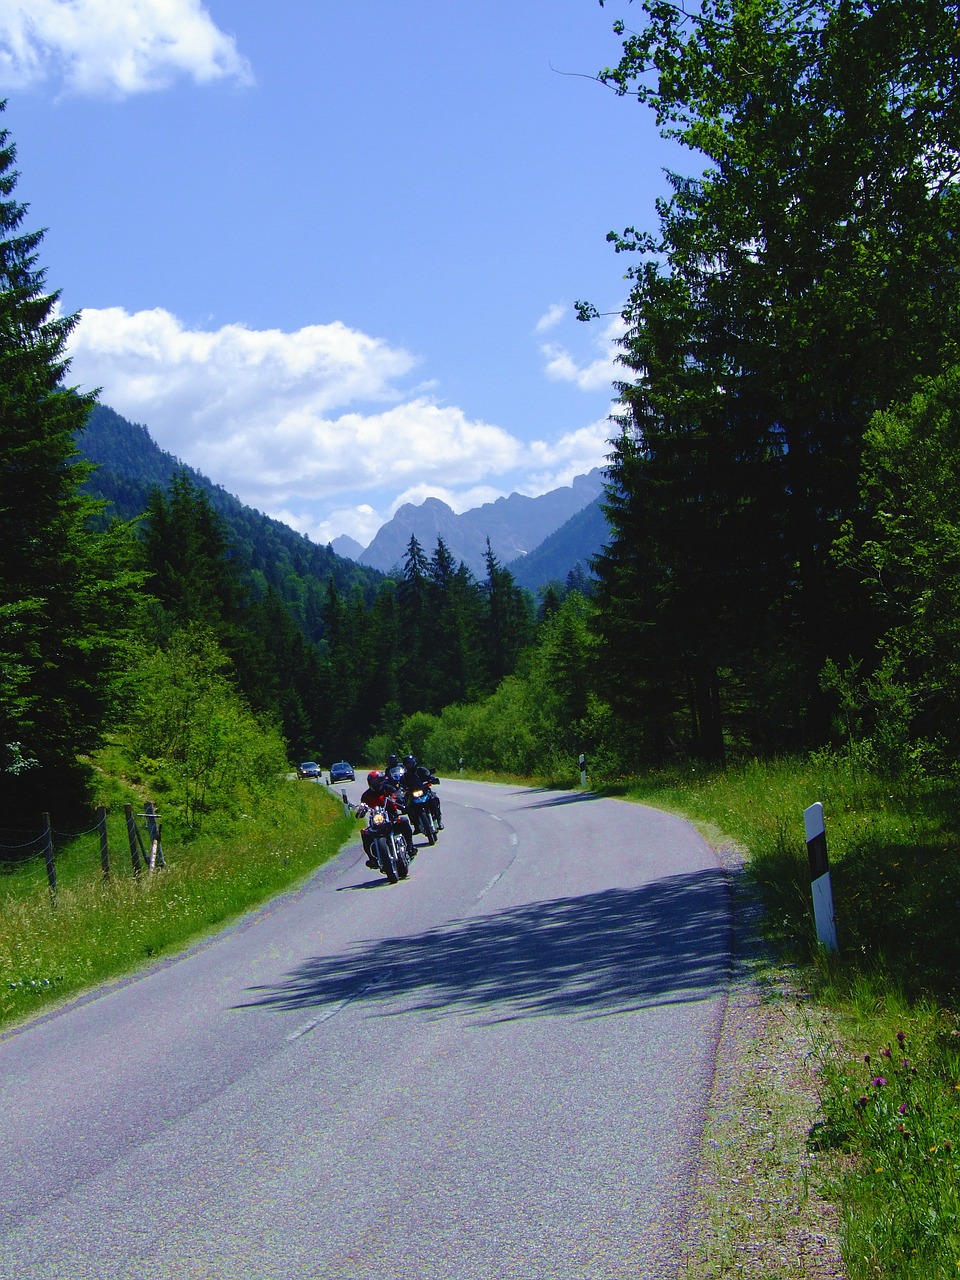 bavaria mountains motorcycles free photo